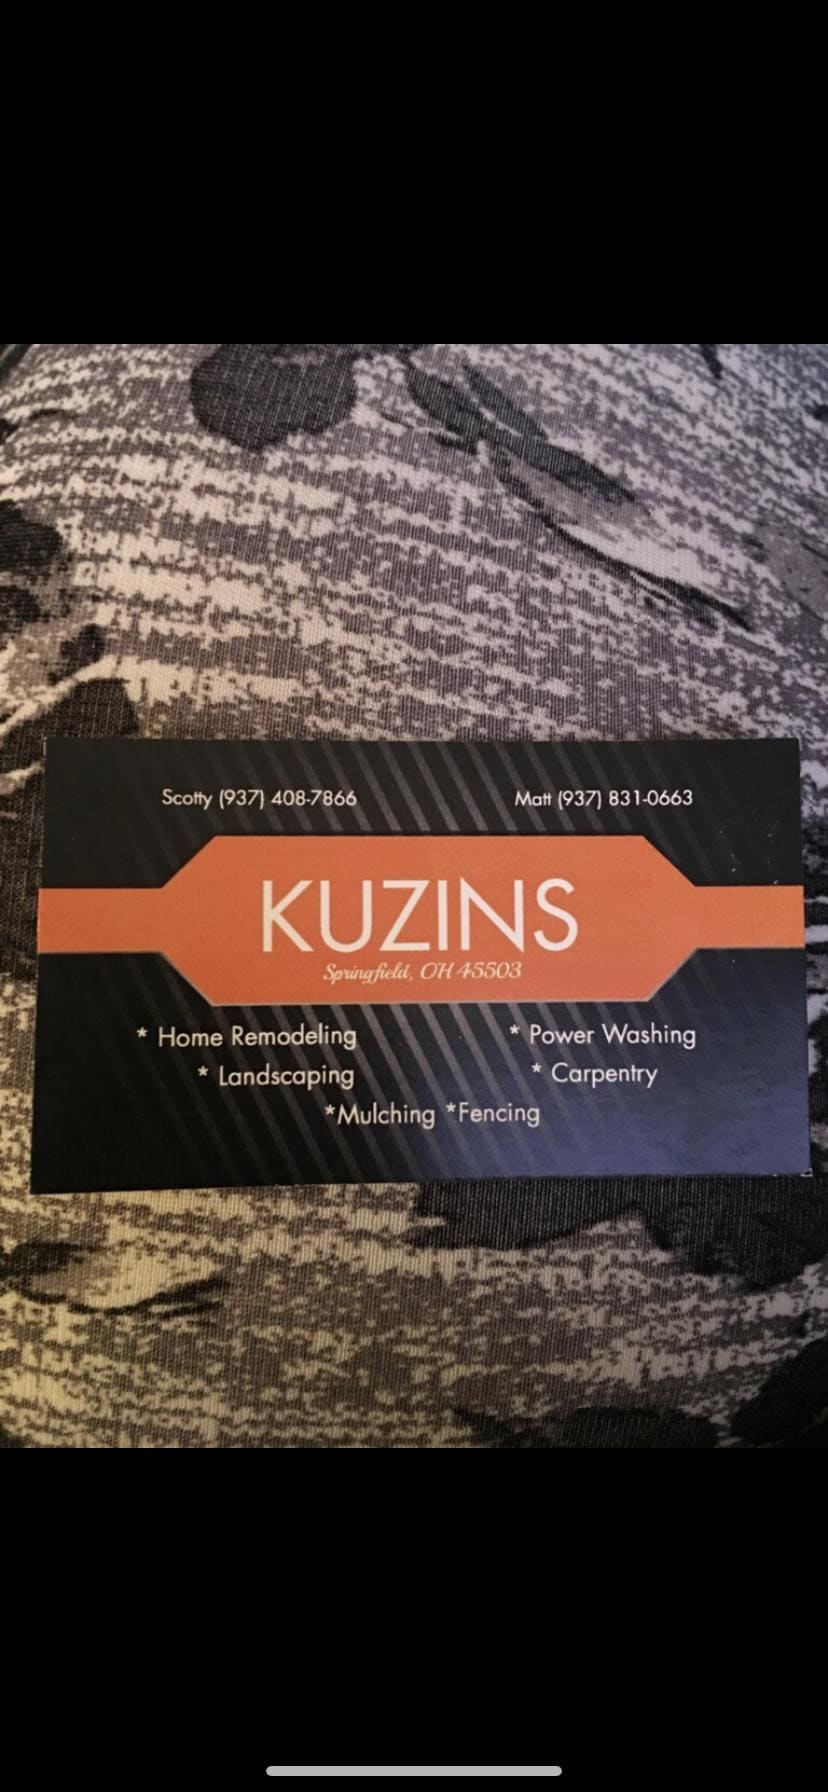 Kuzins